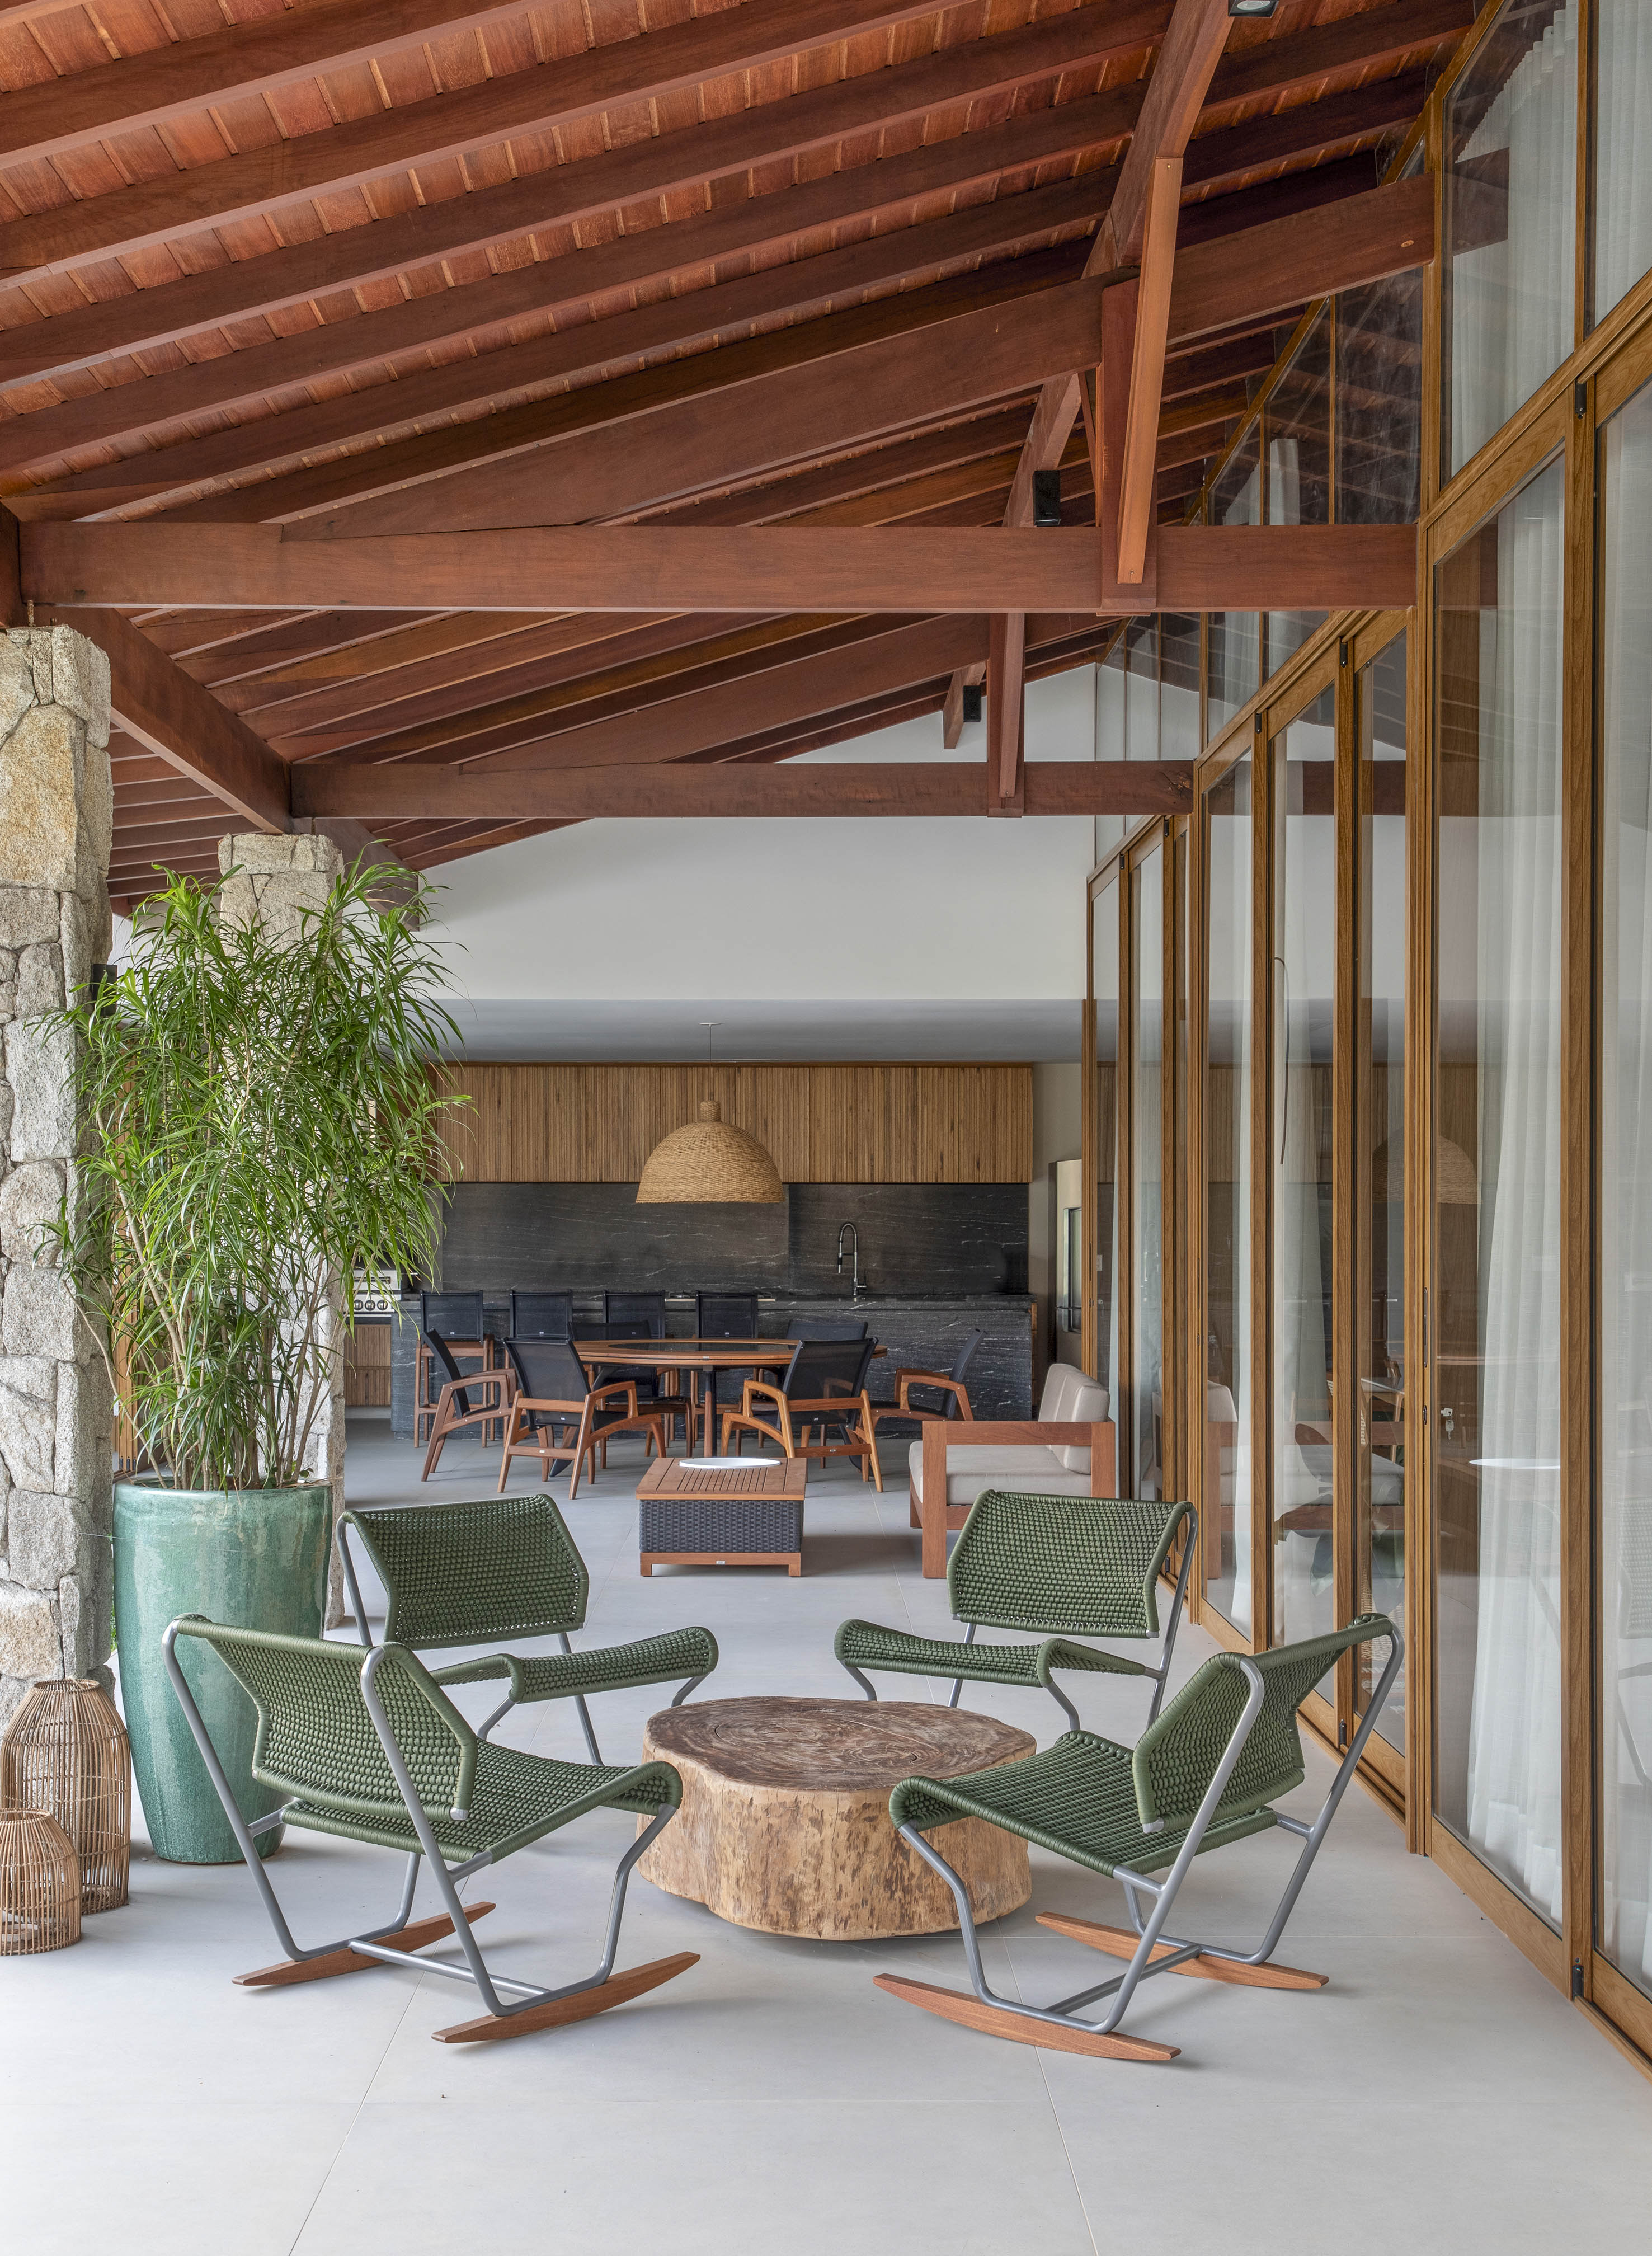 Tons naturais e base neutra marcam casa de campo com cozinha provençal. Projeto de João Panaggio. Na foto, varanda com área gourmet, cadeiras verdes, mesa de centro de madeira.